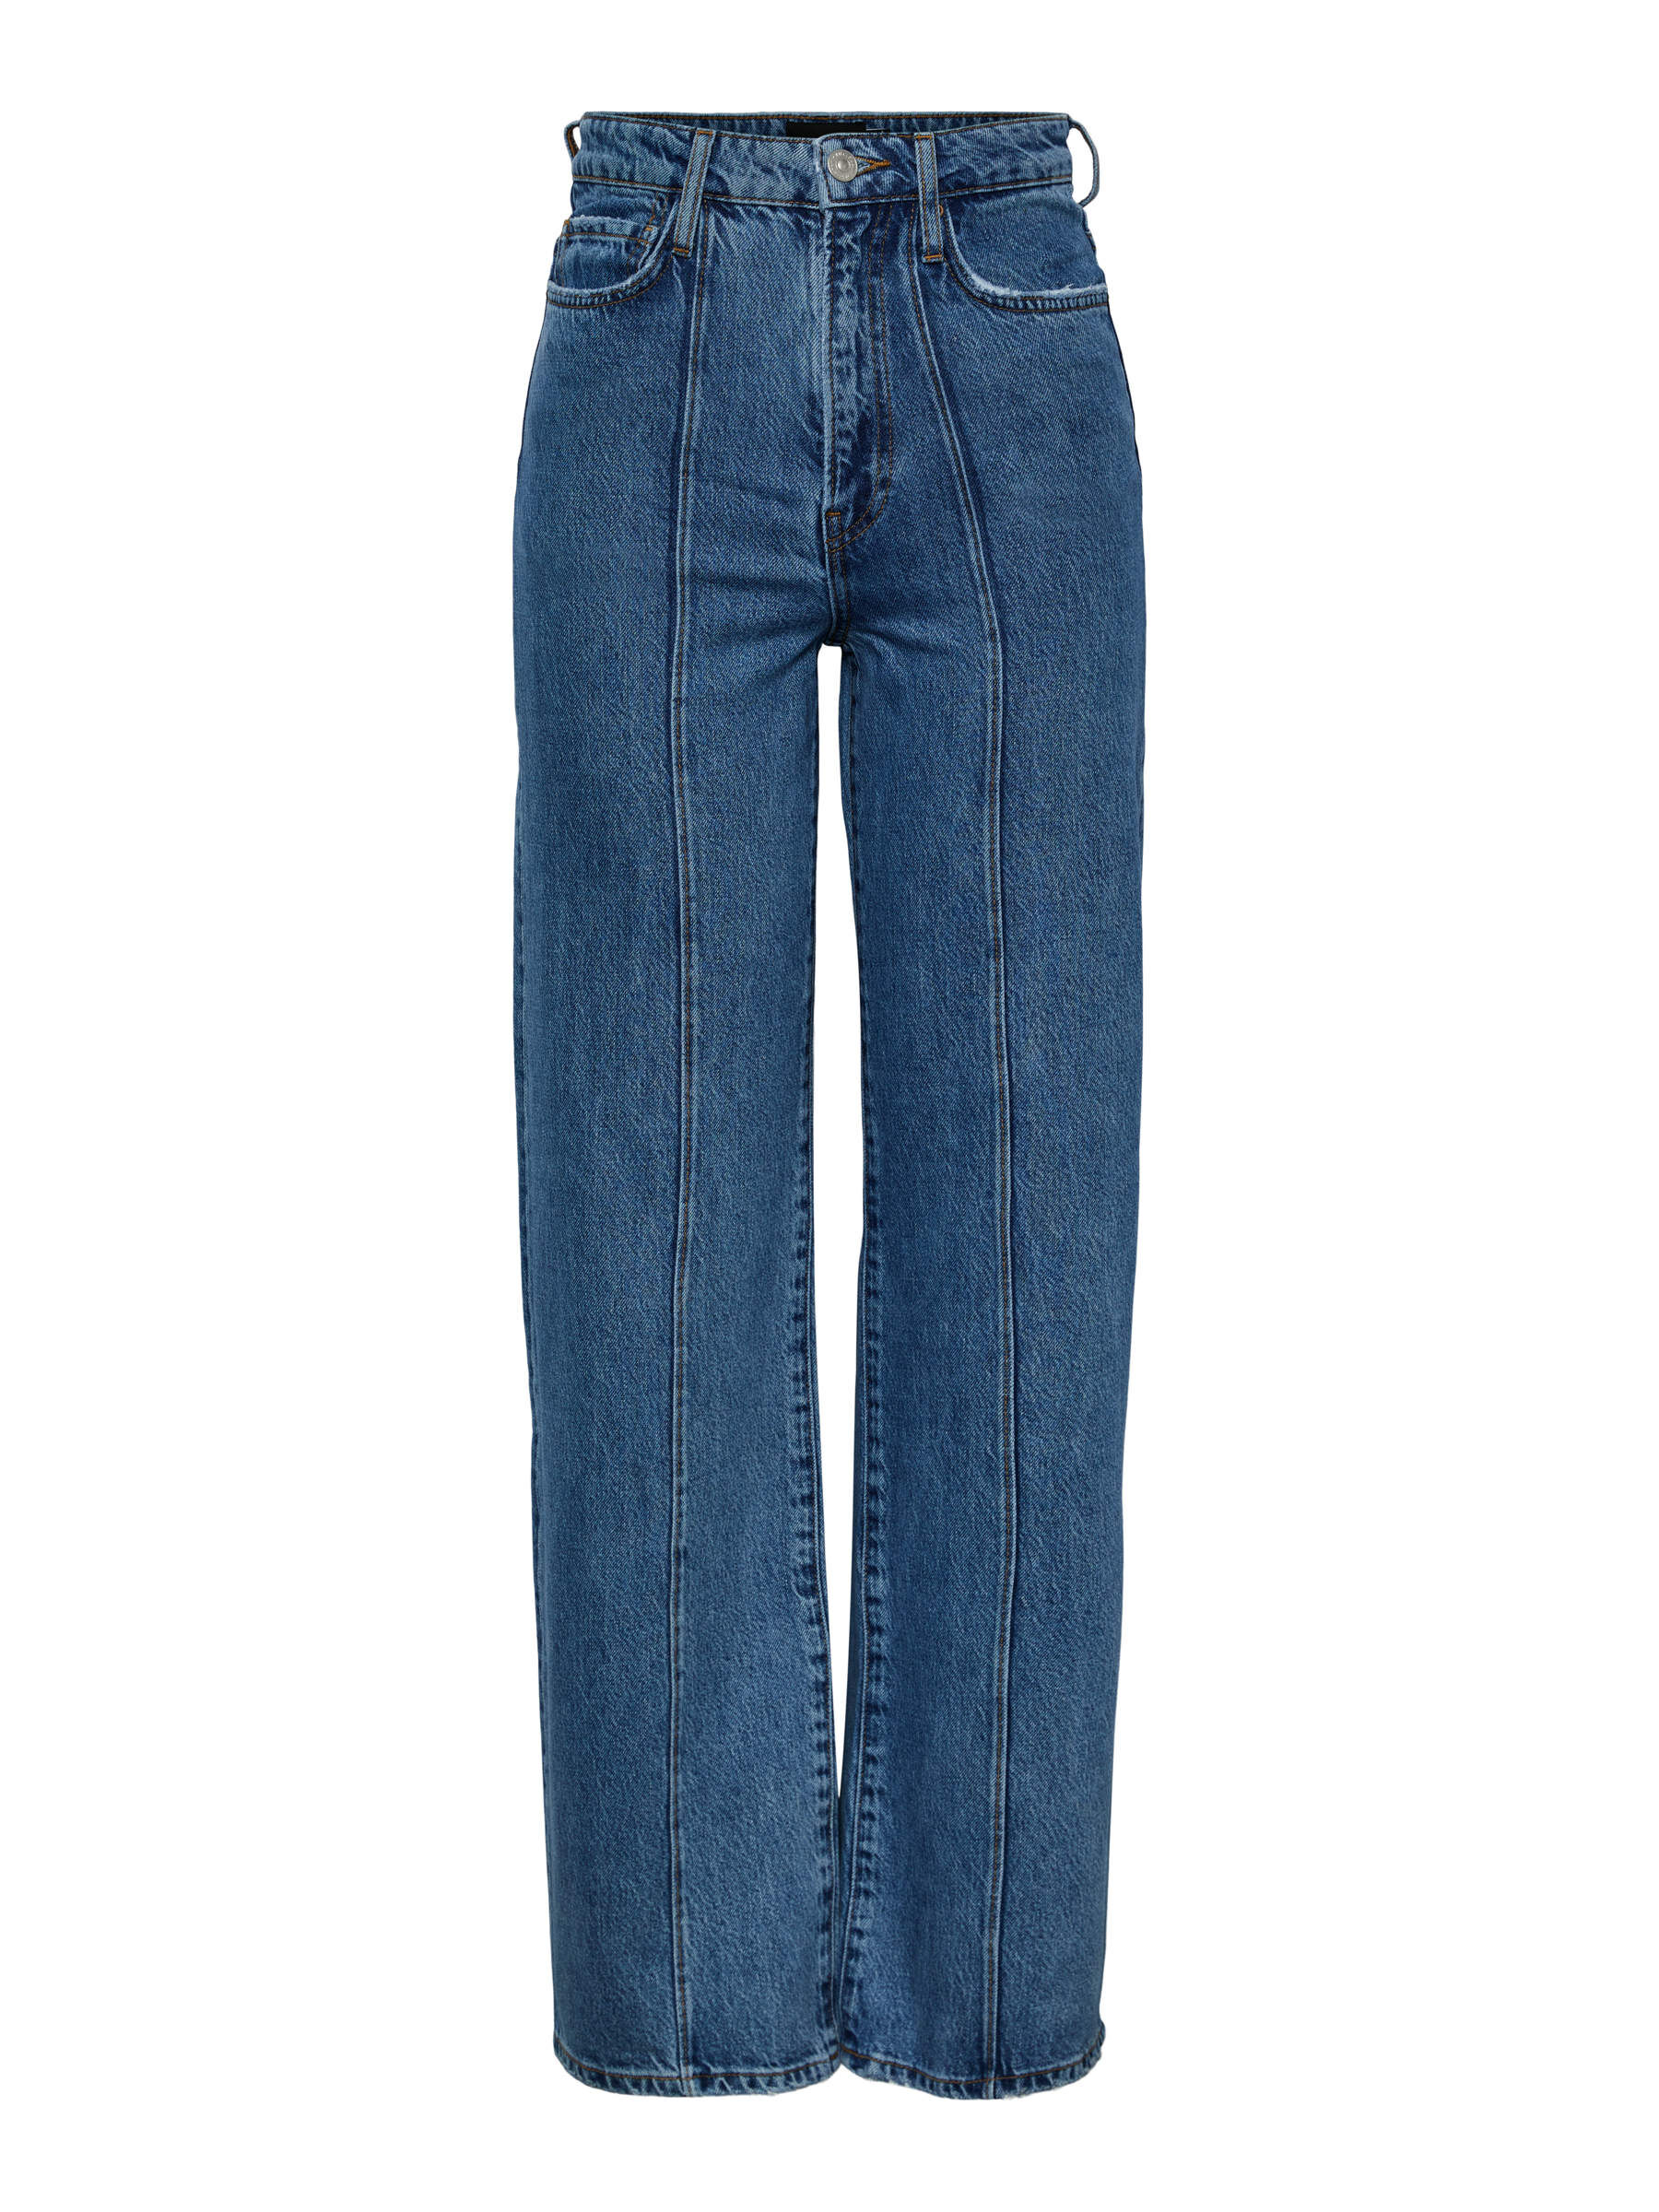 Tintoretto Jeggings & Skinny & Slim Blu/Bianco 46 EU: 42 MODA DONNA Jeans Jeggings & Skinny & Slim Stampato sconto 59% 